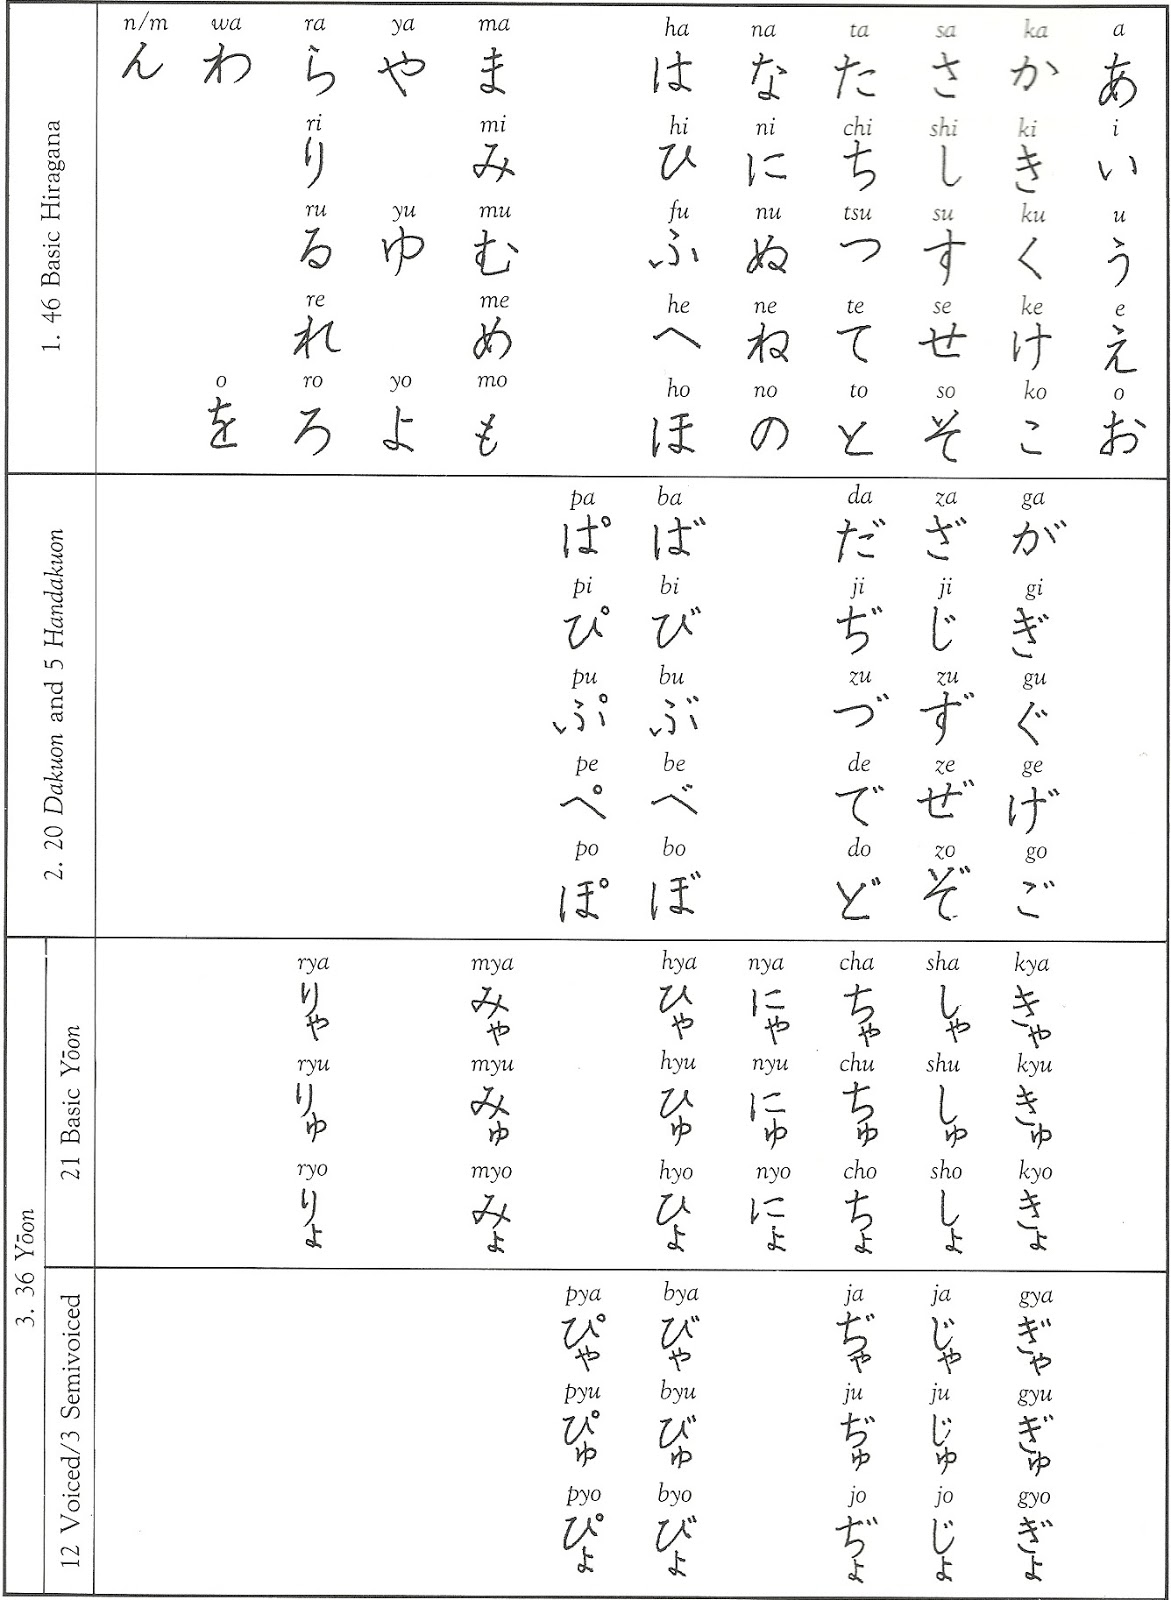 Kosciuszko Te Welke Japans leren: Japans leren - Deel 2: Schrift